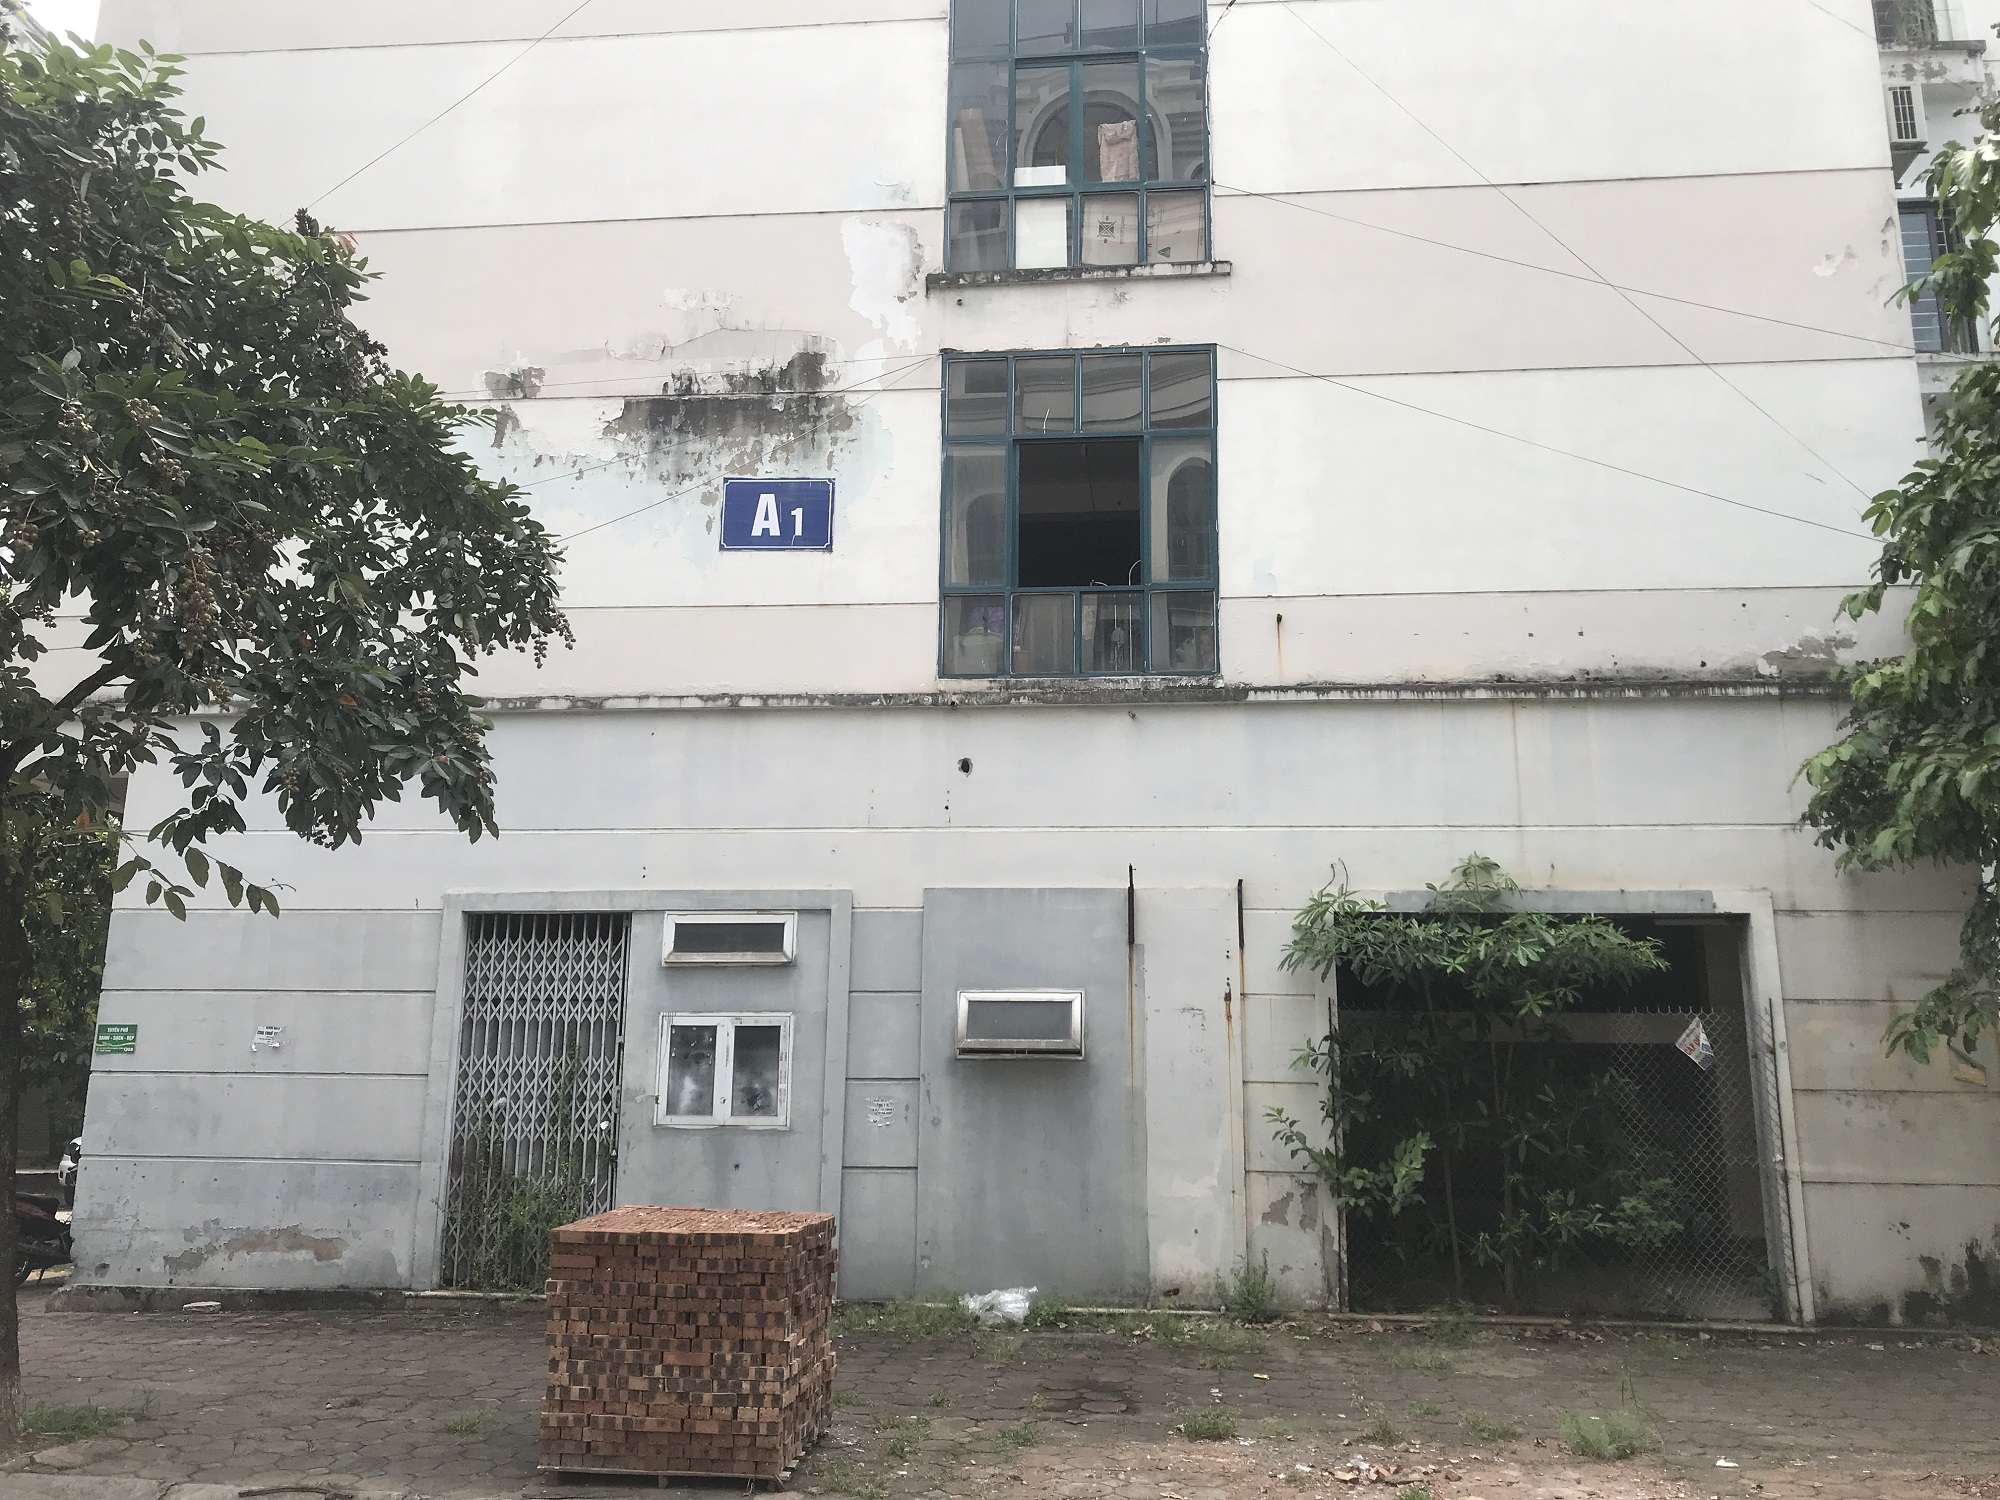 Khoảng 18.000 căn hộ tái định cư bỏ hoang tại Hà Nội và TP. HCM, làm gì để tránh lãng phí?- Ảnh 2.